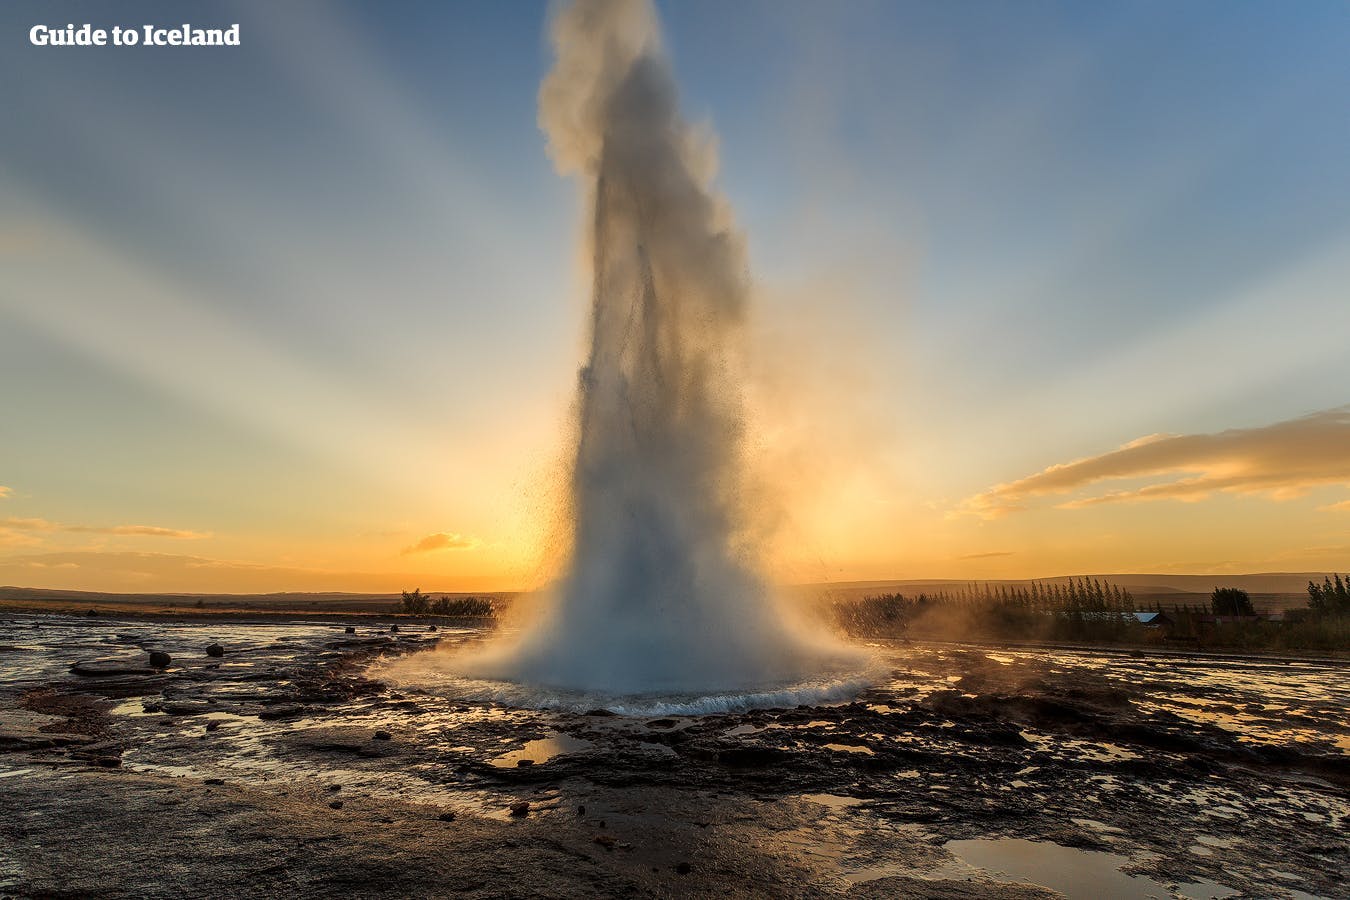 Visita il Circolo d'Oro per vedere il geyser Strokkur mentre erutta, grazie a un tour self-drive estivo.